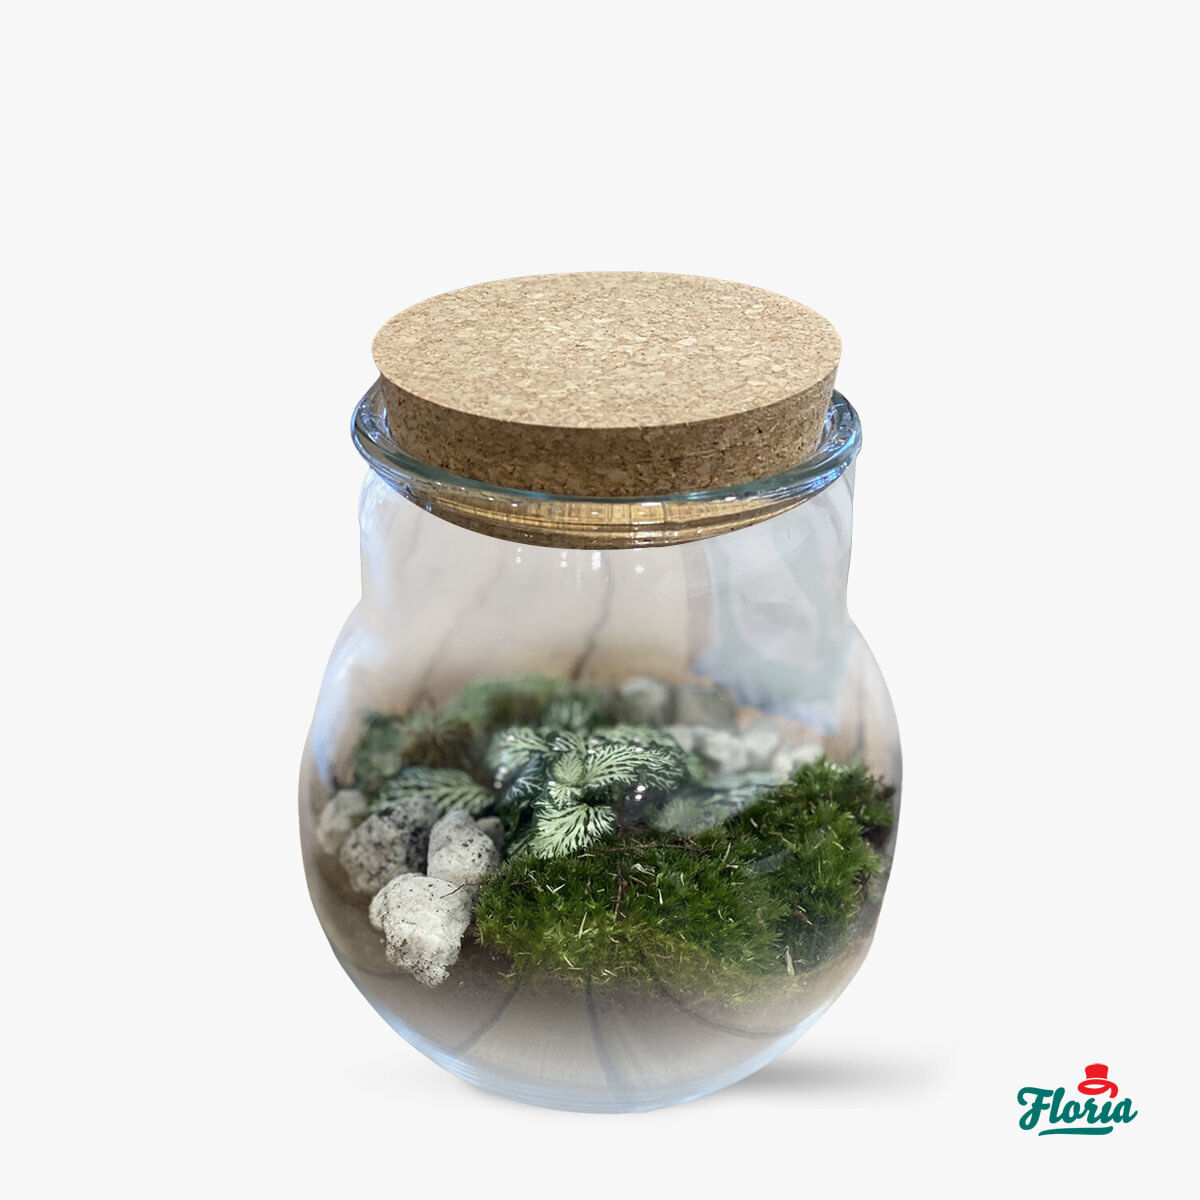 Mini-terariu cu muschi si plante – Standard Floria imagine 2022